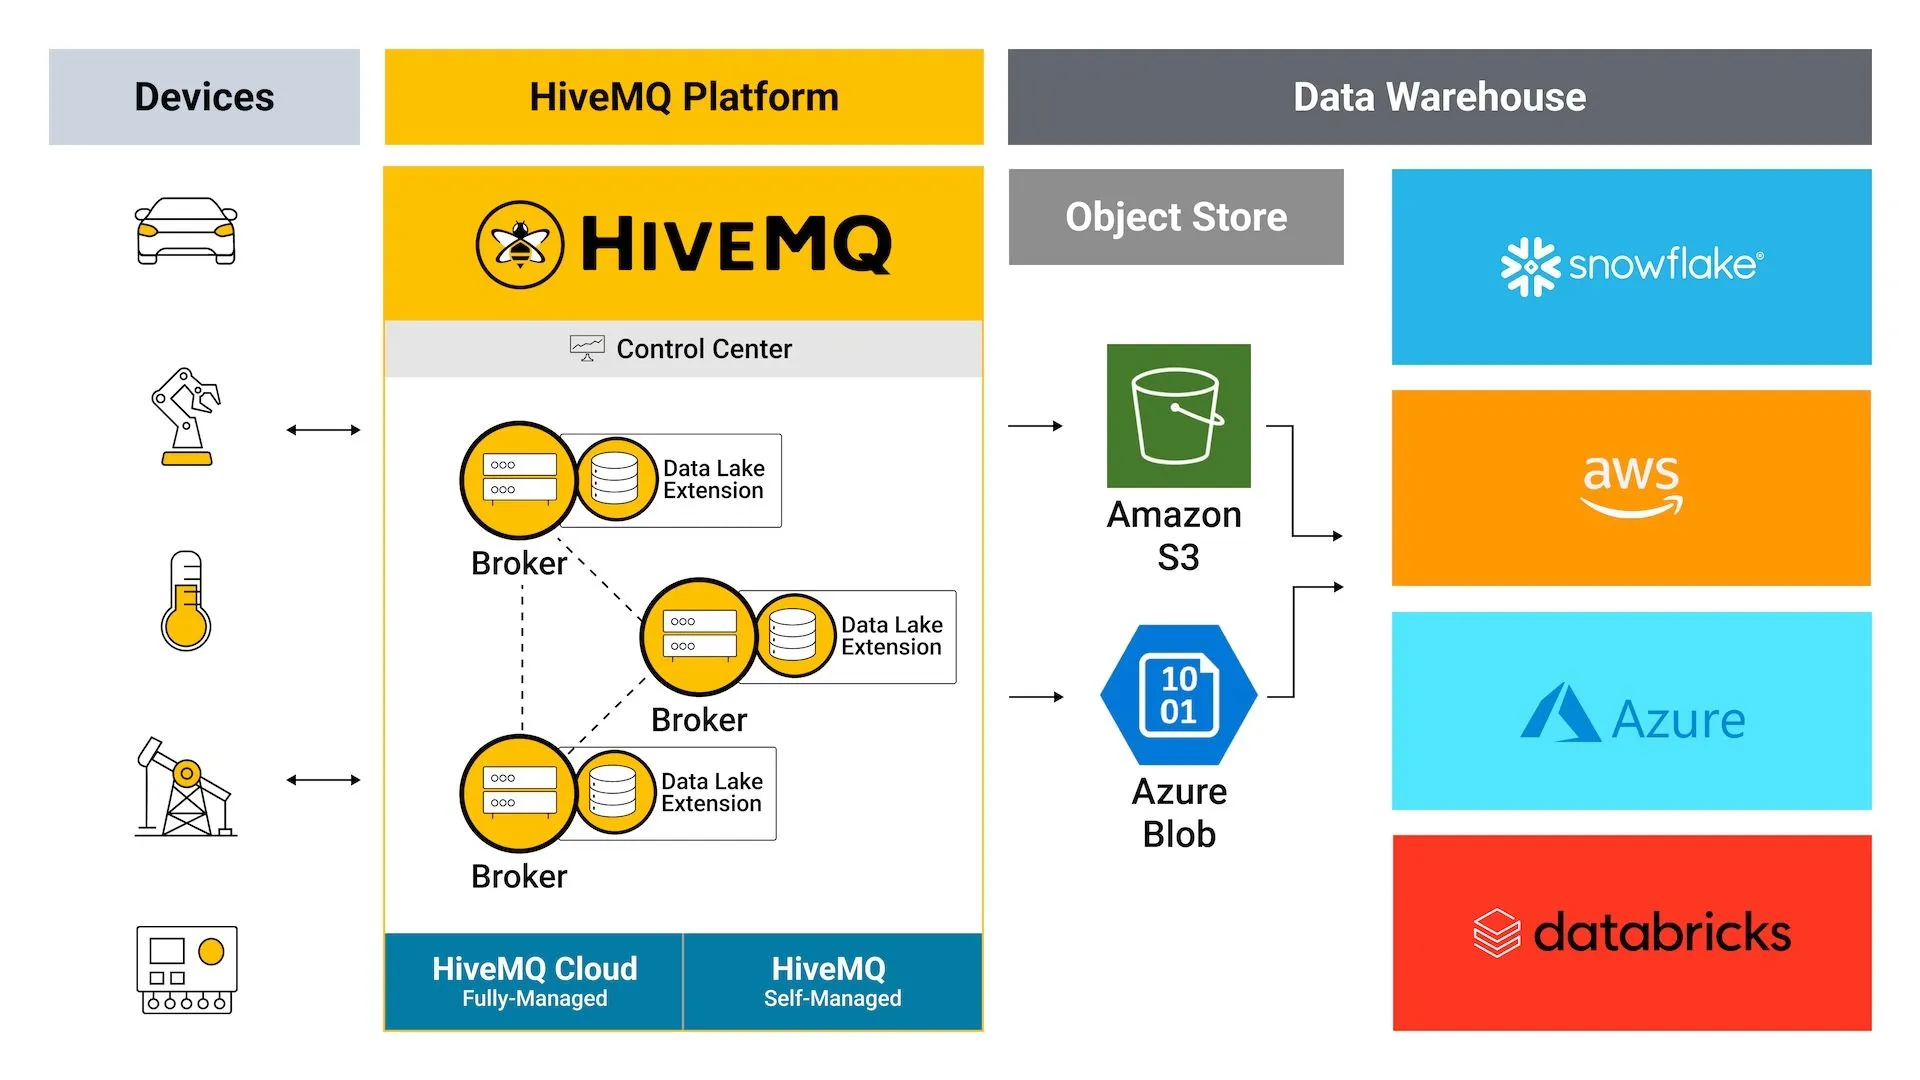 HiveMQ Enterprise Data Lake Extension